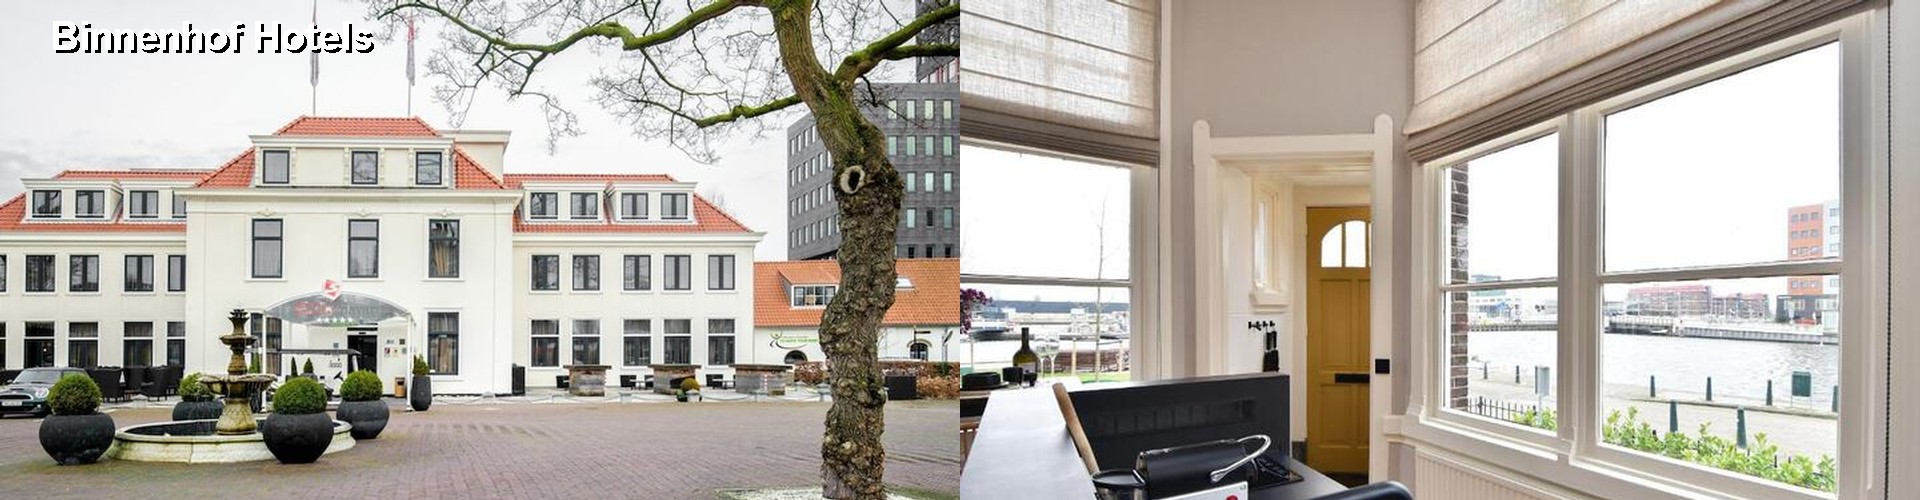 5 Best Hotels near Binnenhof